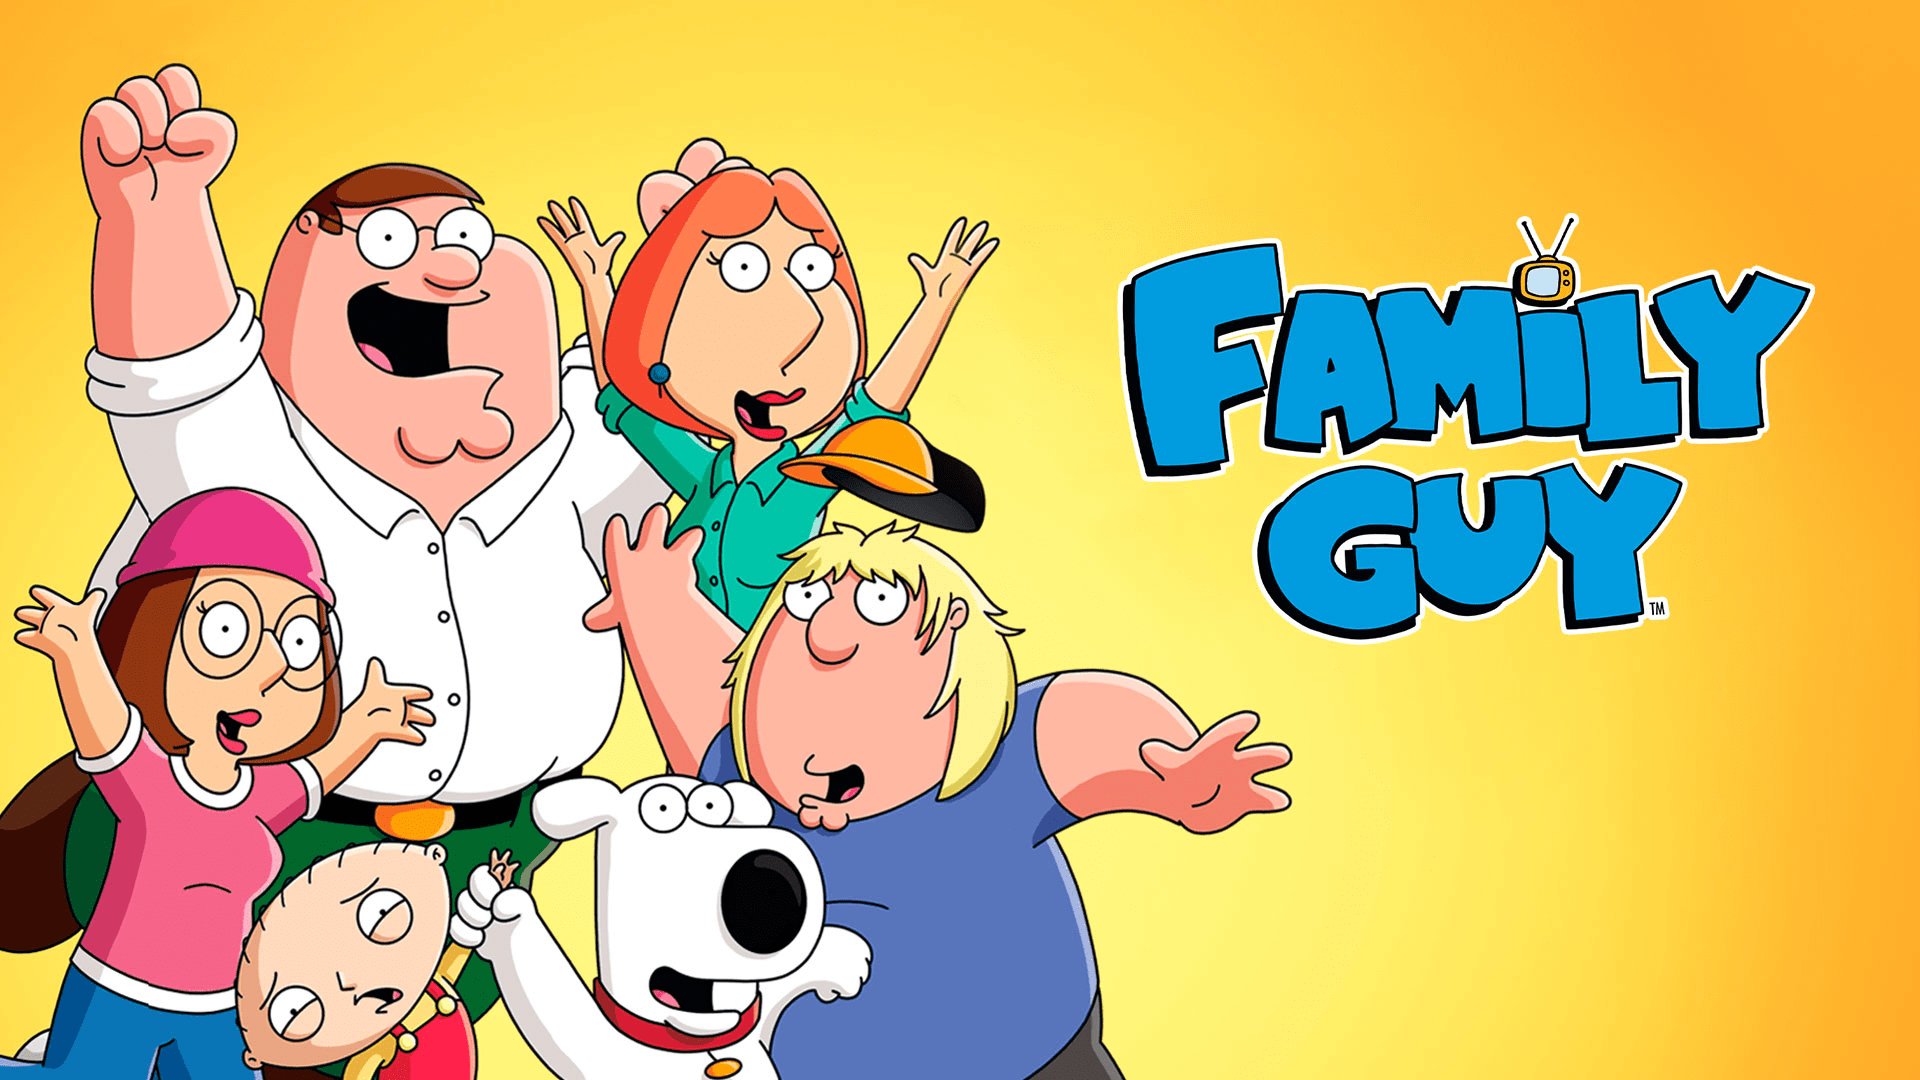 7. Family Guy